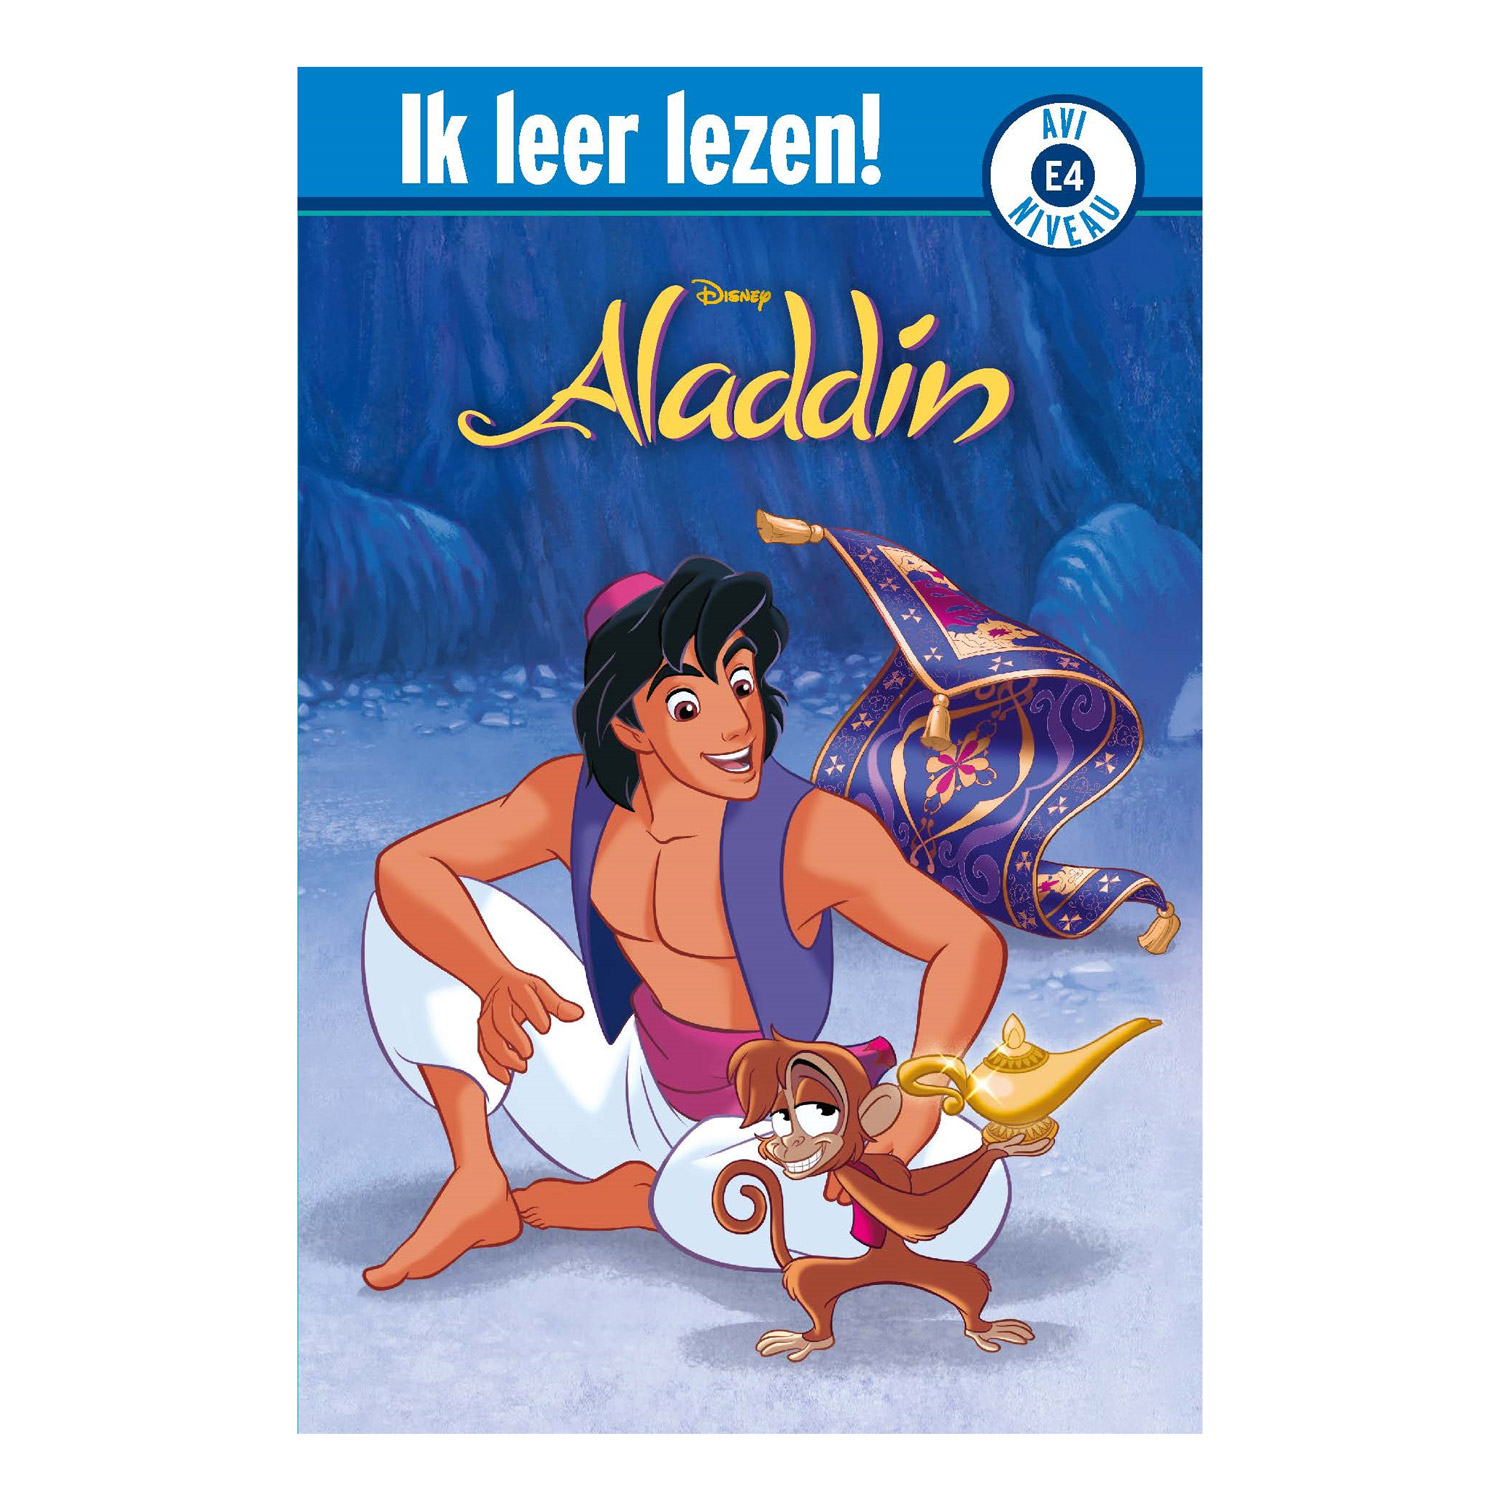 Chronisch kwaadheid de vrije loop geven Chip Aladdin - Ik leer lezen! AVI-E4 online kopen? | Lobbes Speelgoed